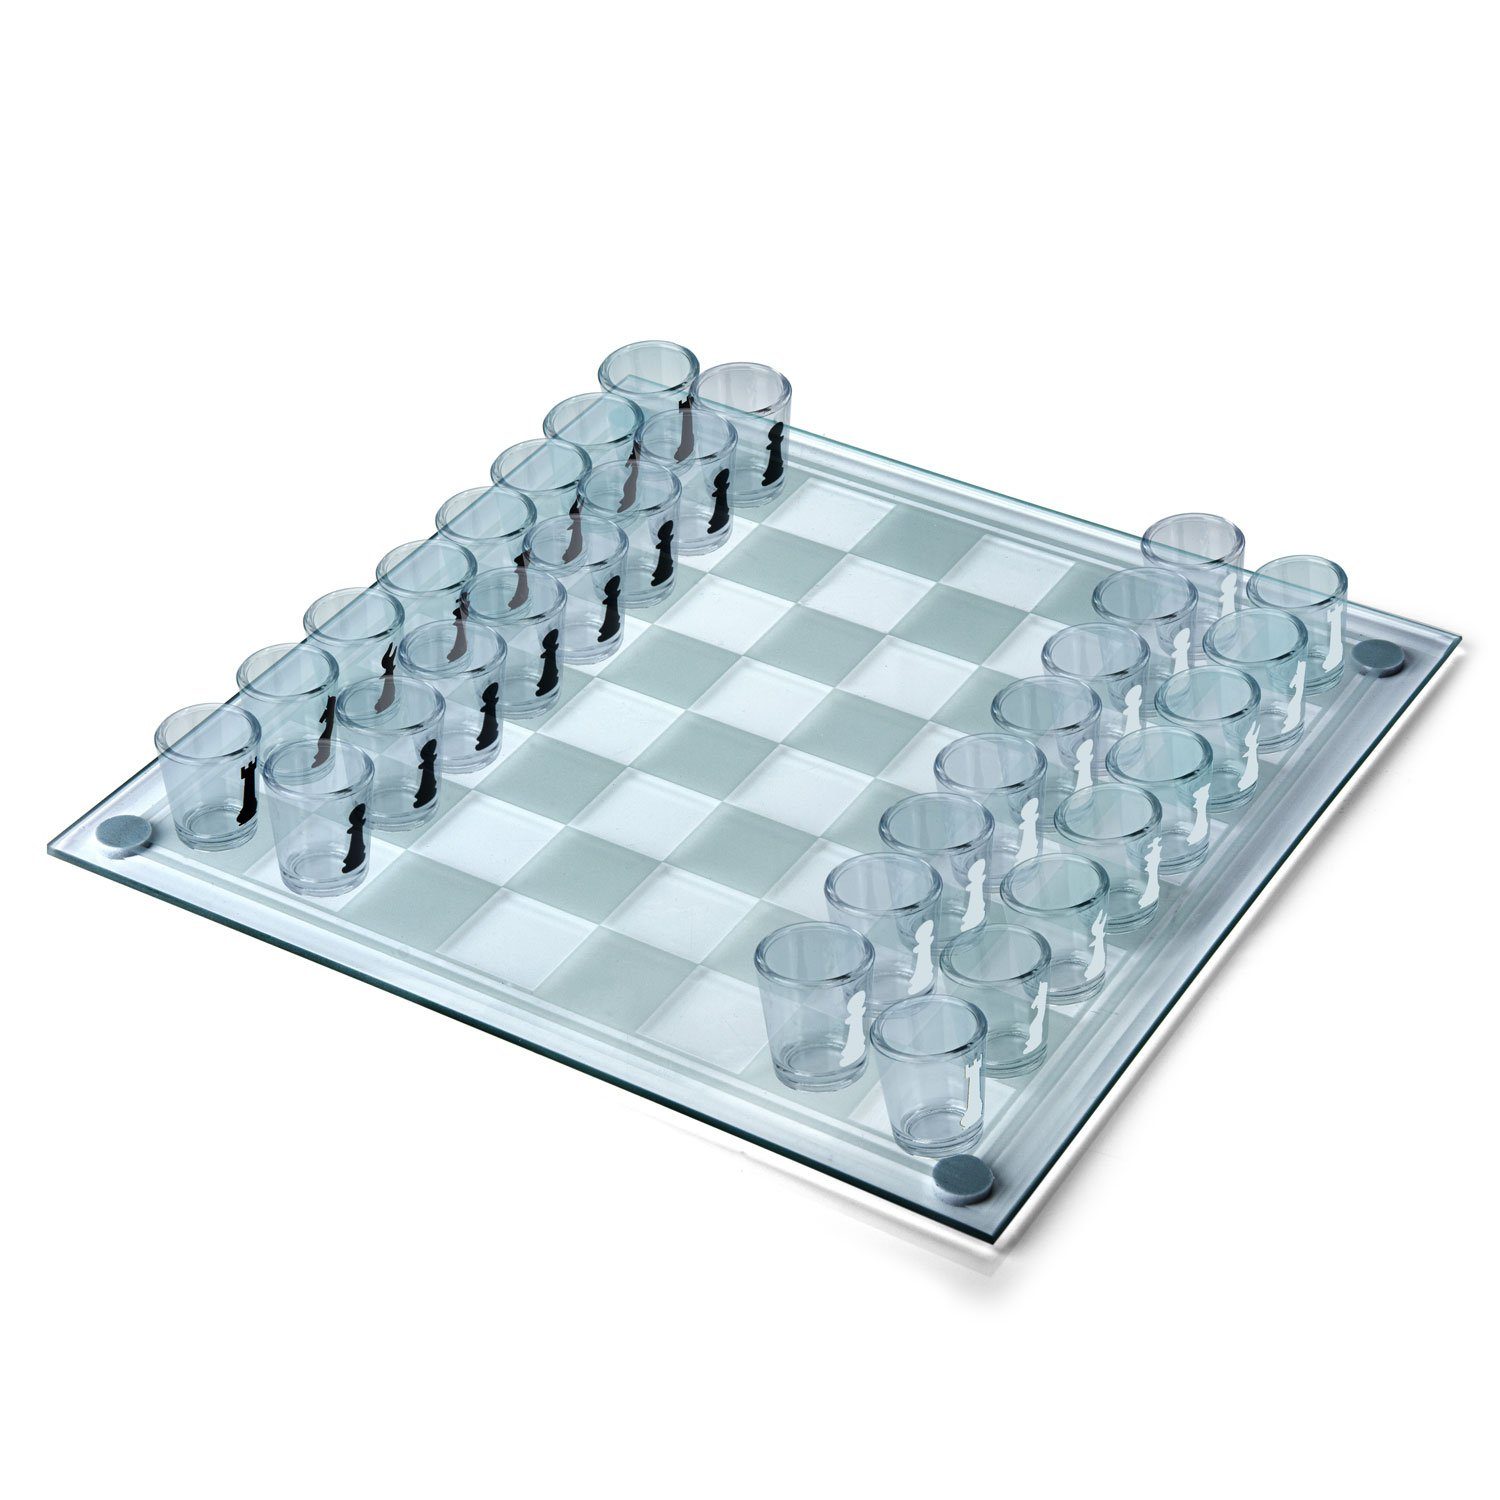 SOMBO Trinkspiel Schach mit 32 Gläser, ca 35 x …